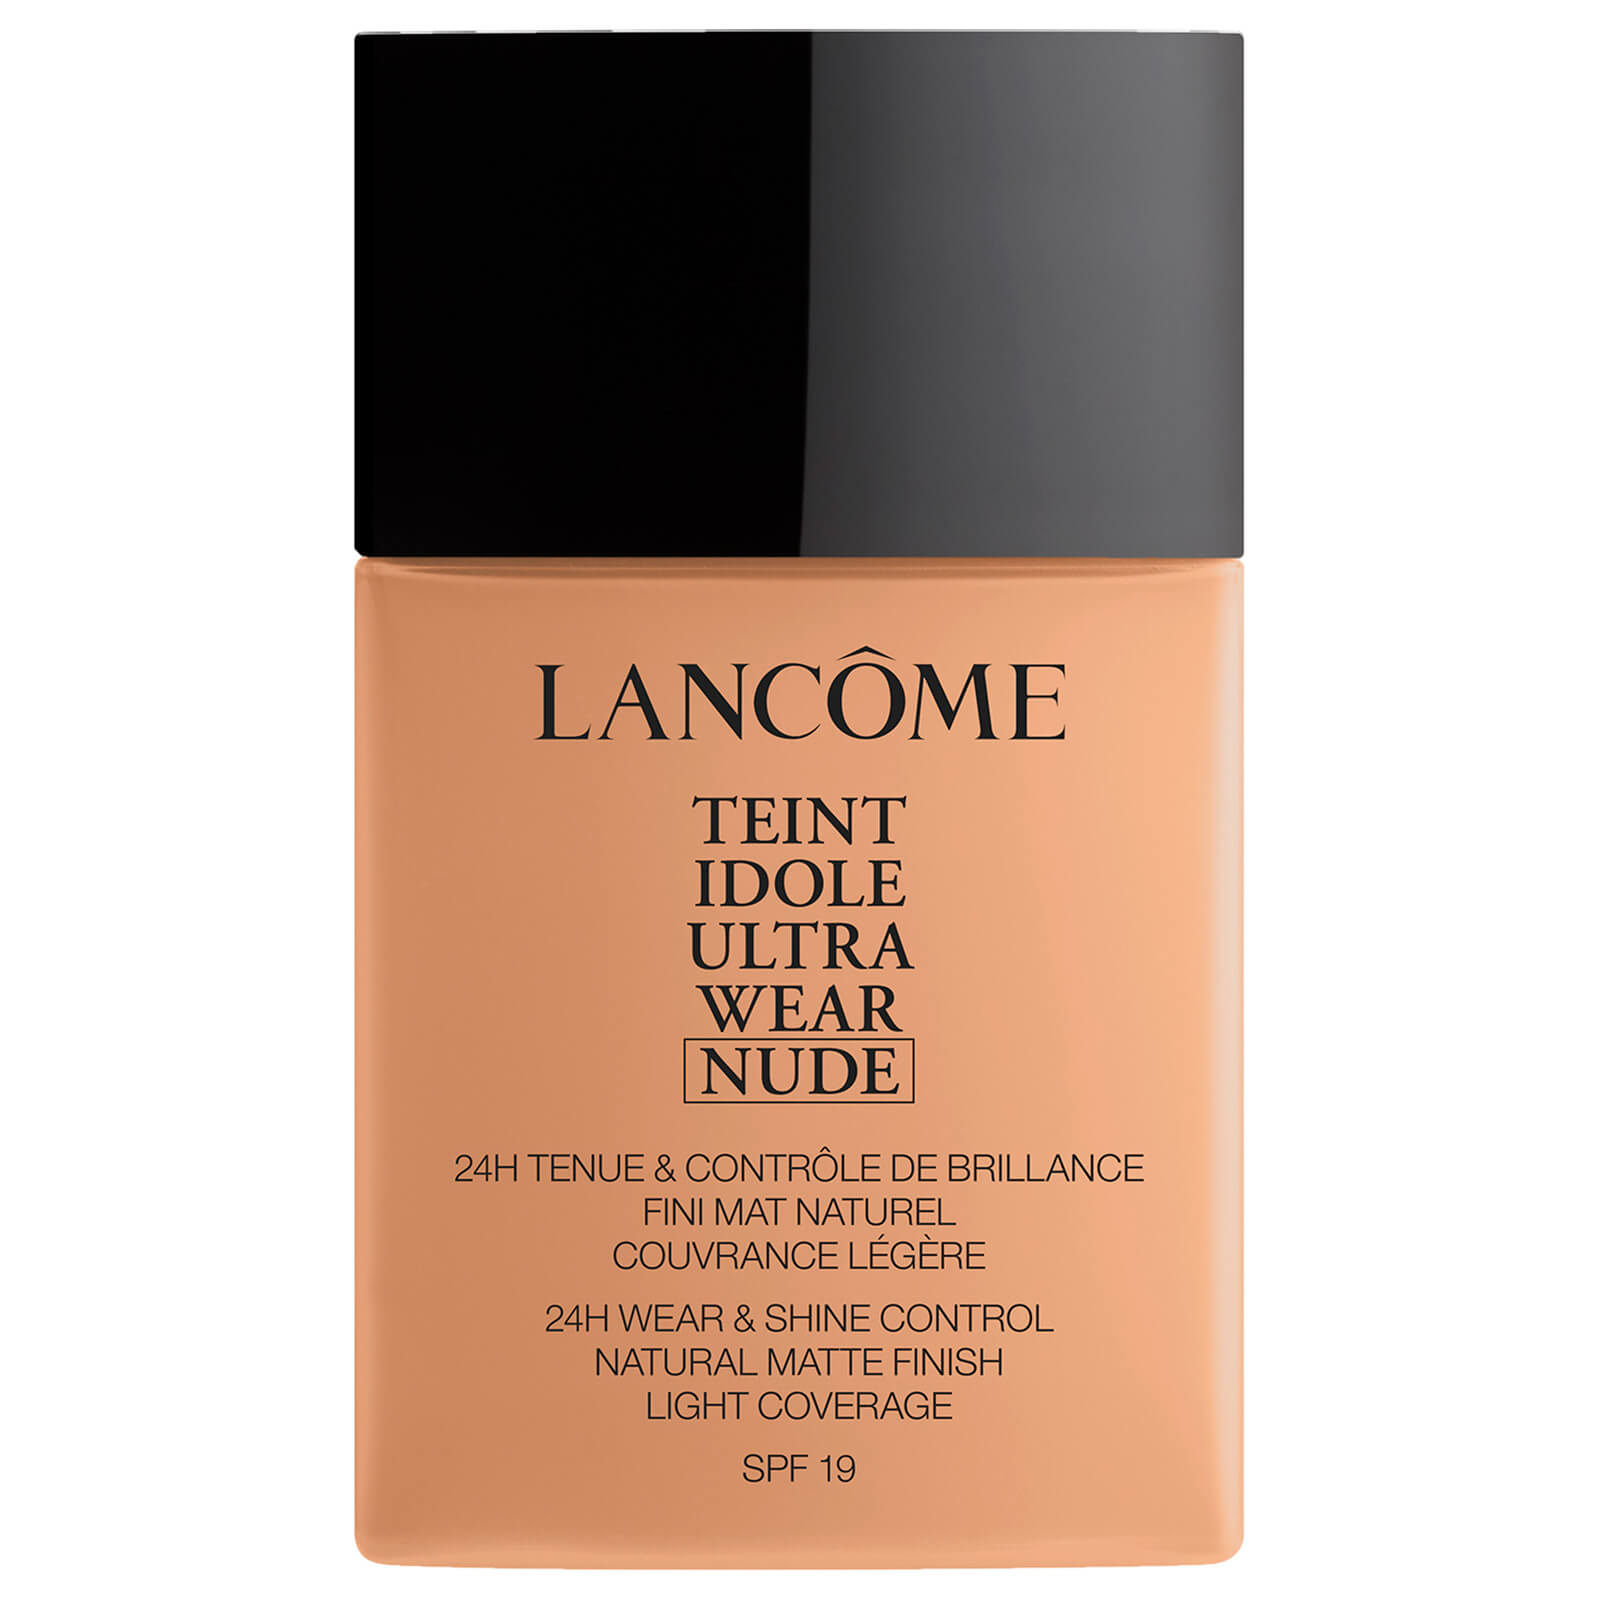 Lancôme Teint Idole Ultra Wear Nude Foundation 40ml (Various Shades) - 045 Sable Beige